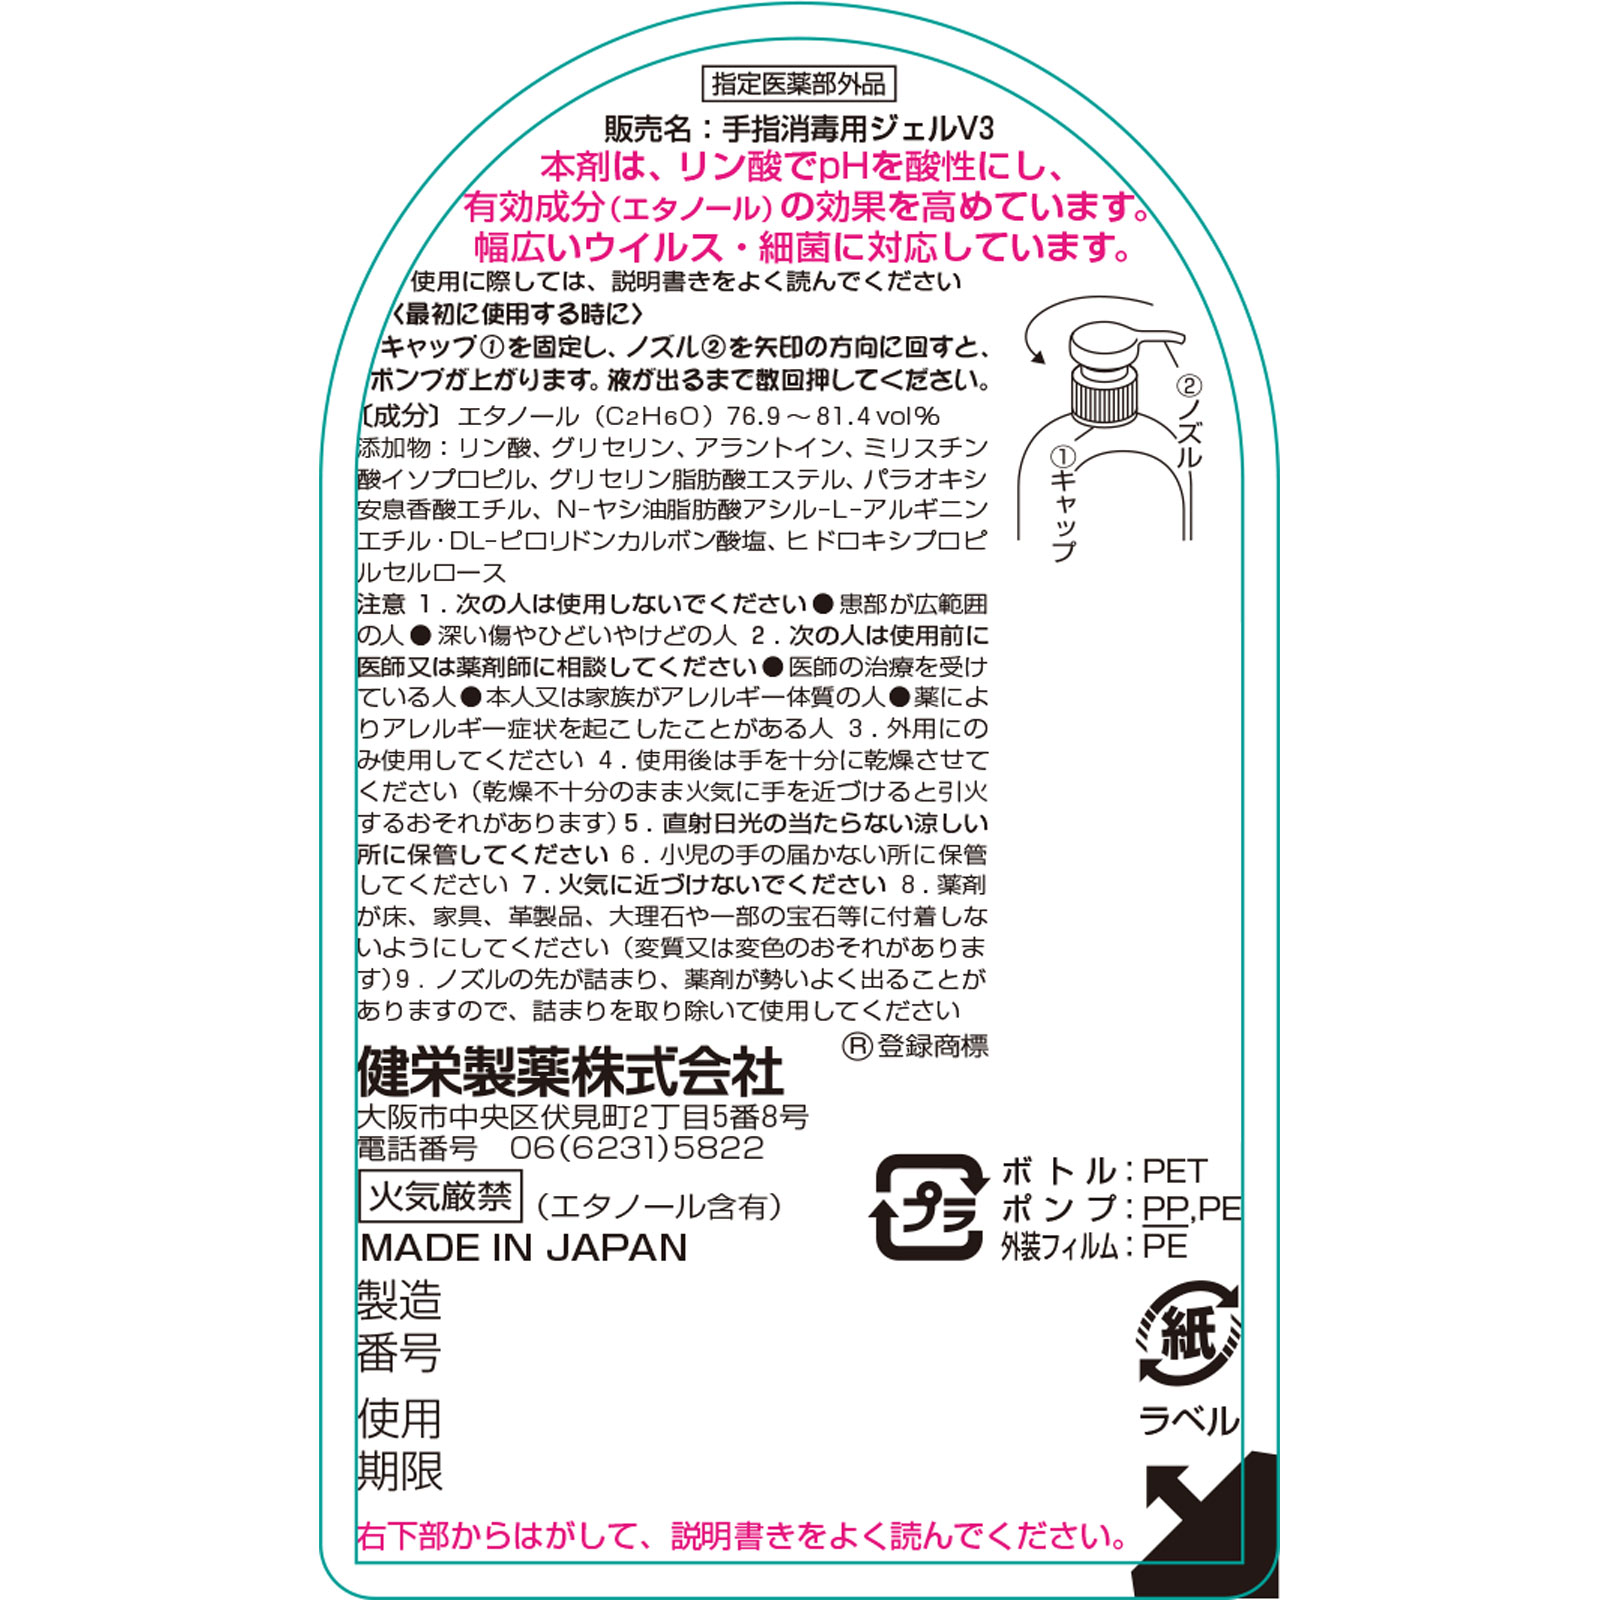 手ピカジェルプラス 300mL 【指定医薬部外品】: 医薬品・衛生用品 Tomod's ONLINE SHOP